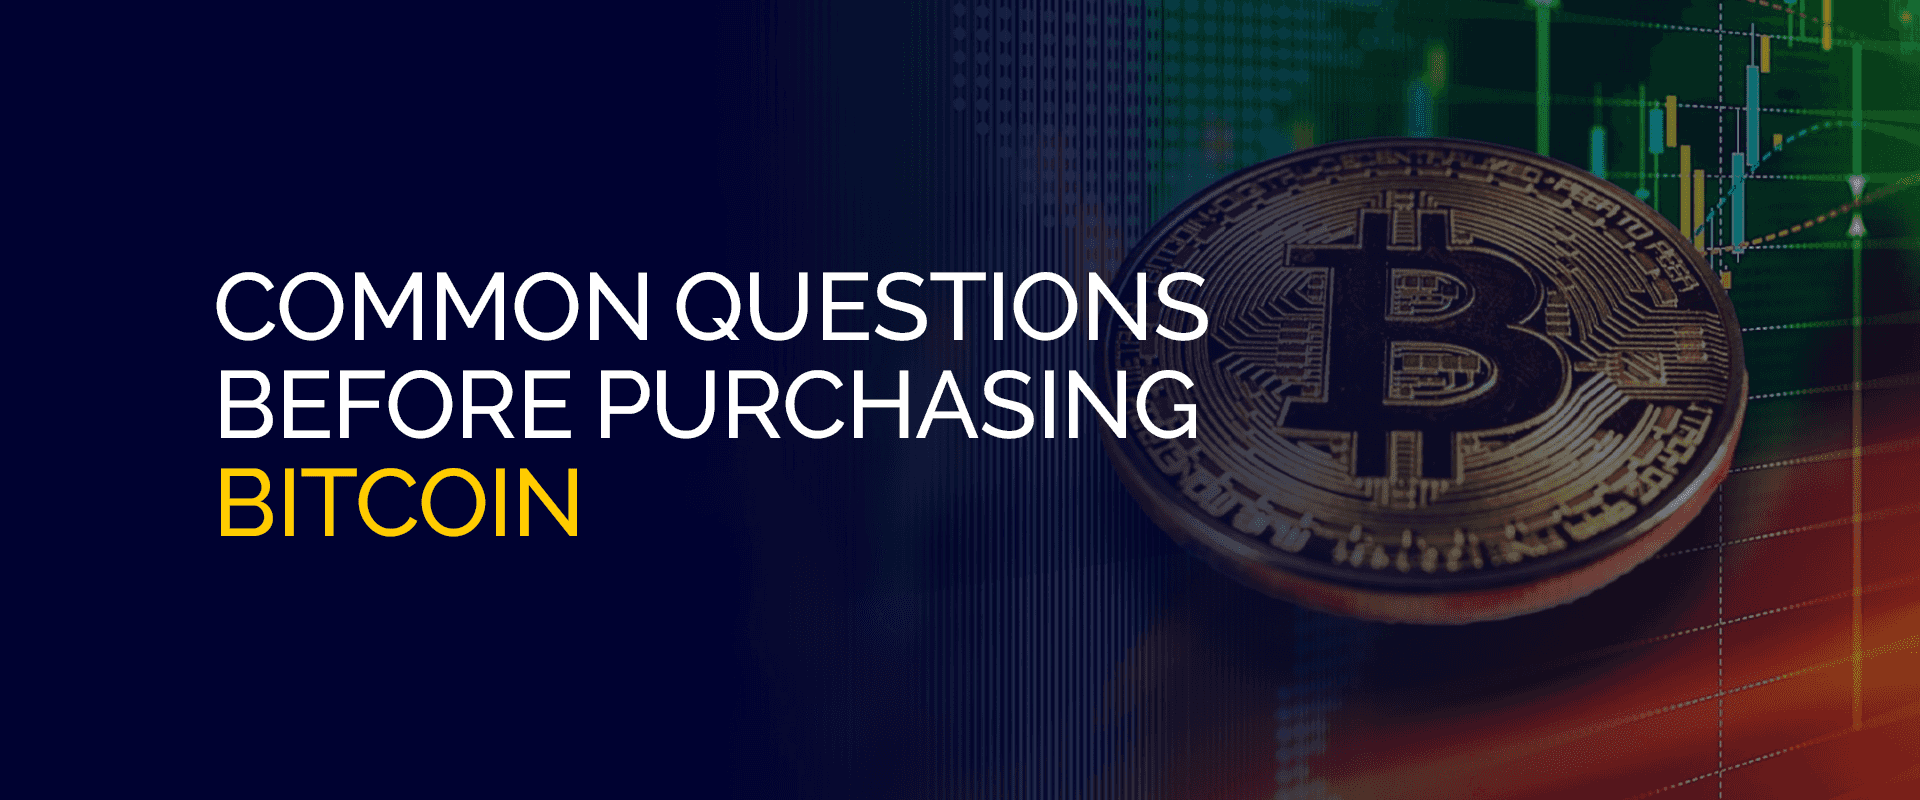 Pertanyaan Umum Sebelum Membeli Bitcoin